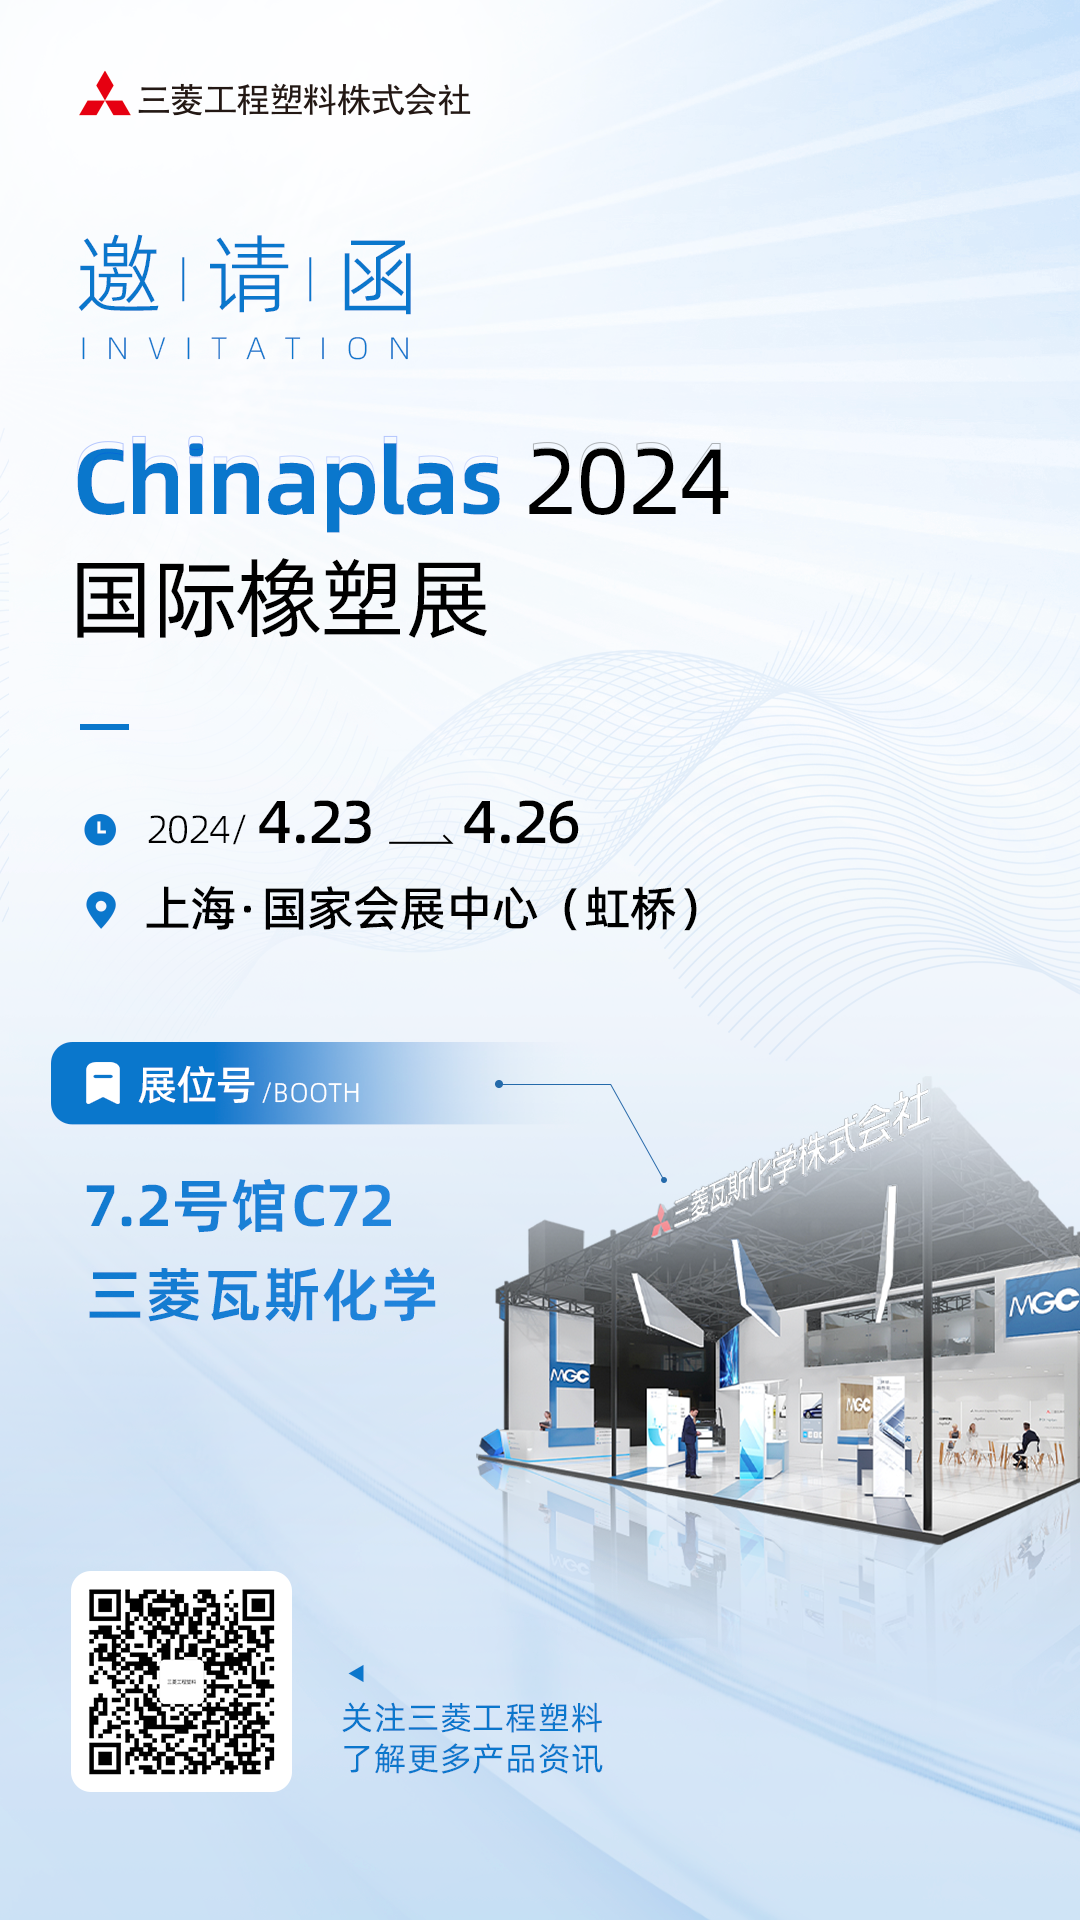 三菱工程塑料诚邀您参加Chinaplas 2024国际橡塑展